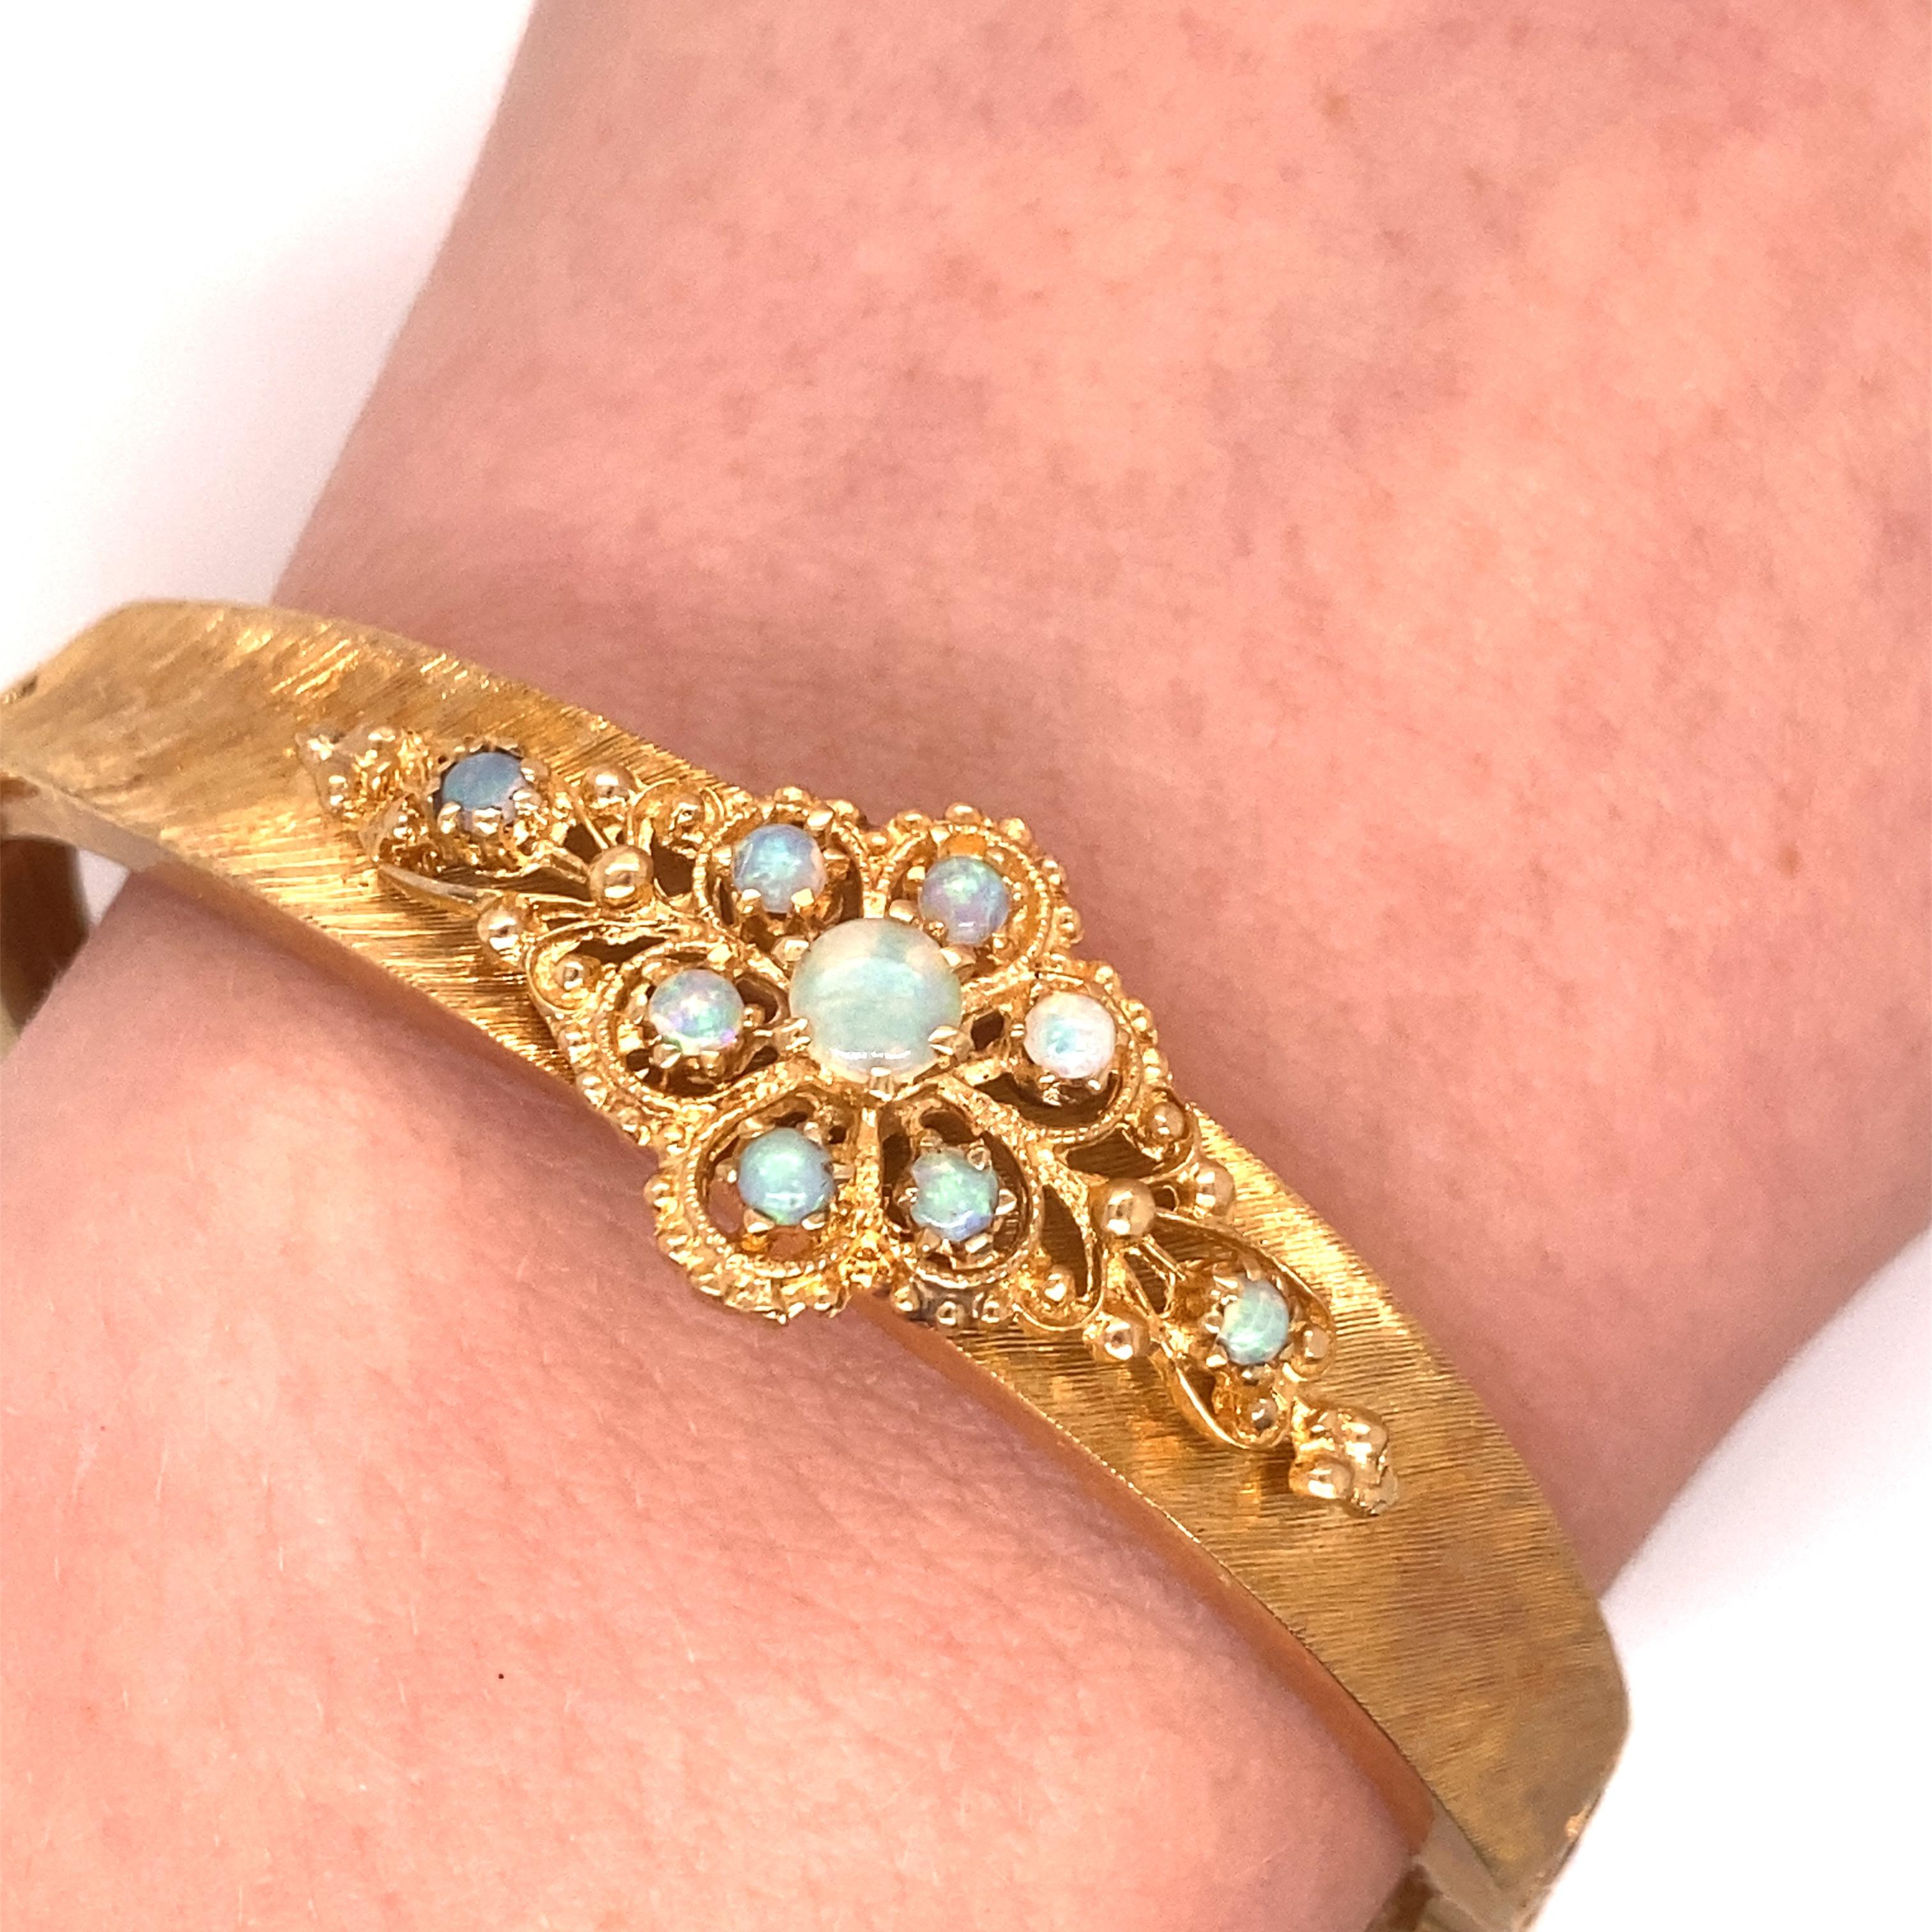 Vintage 14K Yellow Gold Victorian Reproduction Opal Bangle - Le bracelet contient 9 opales rondes avec un jeu de couleur vert/bleu. Le motif en filigrane est monté sur un bracelet en finition Florentine. Le bracelet mesure 0,50 pouce de large. Le